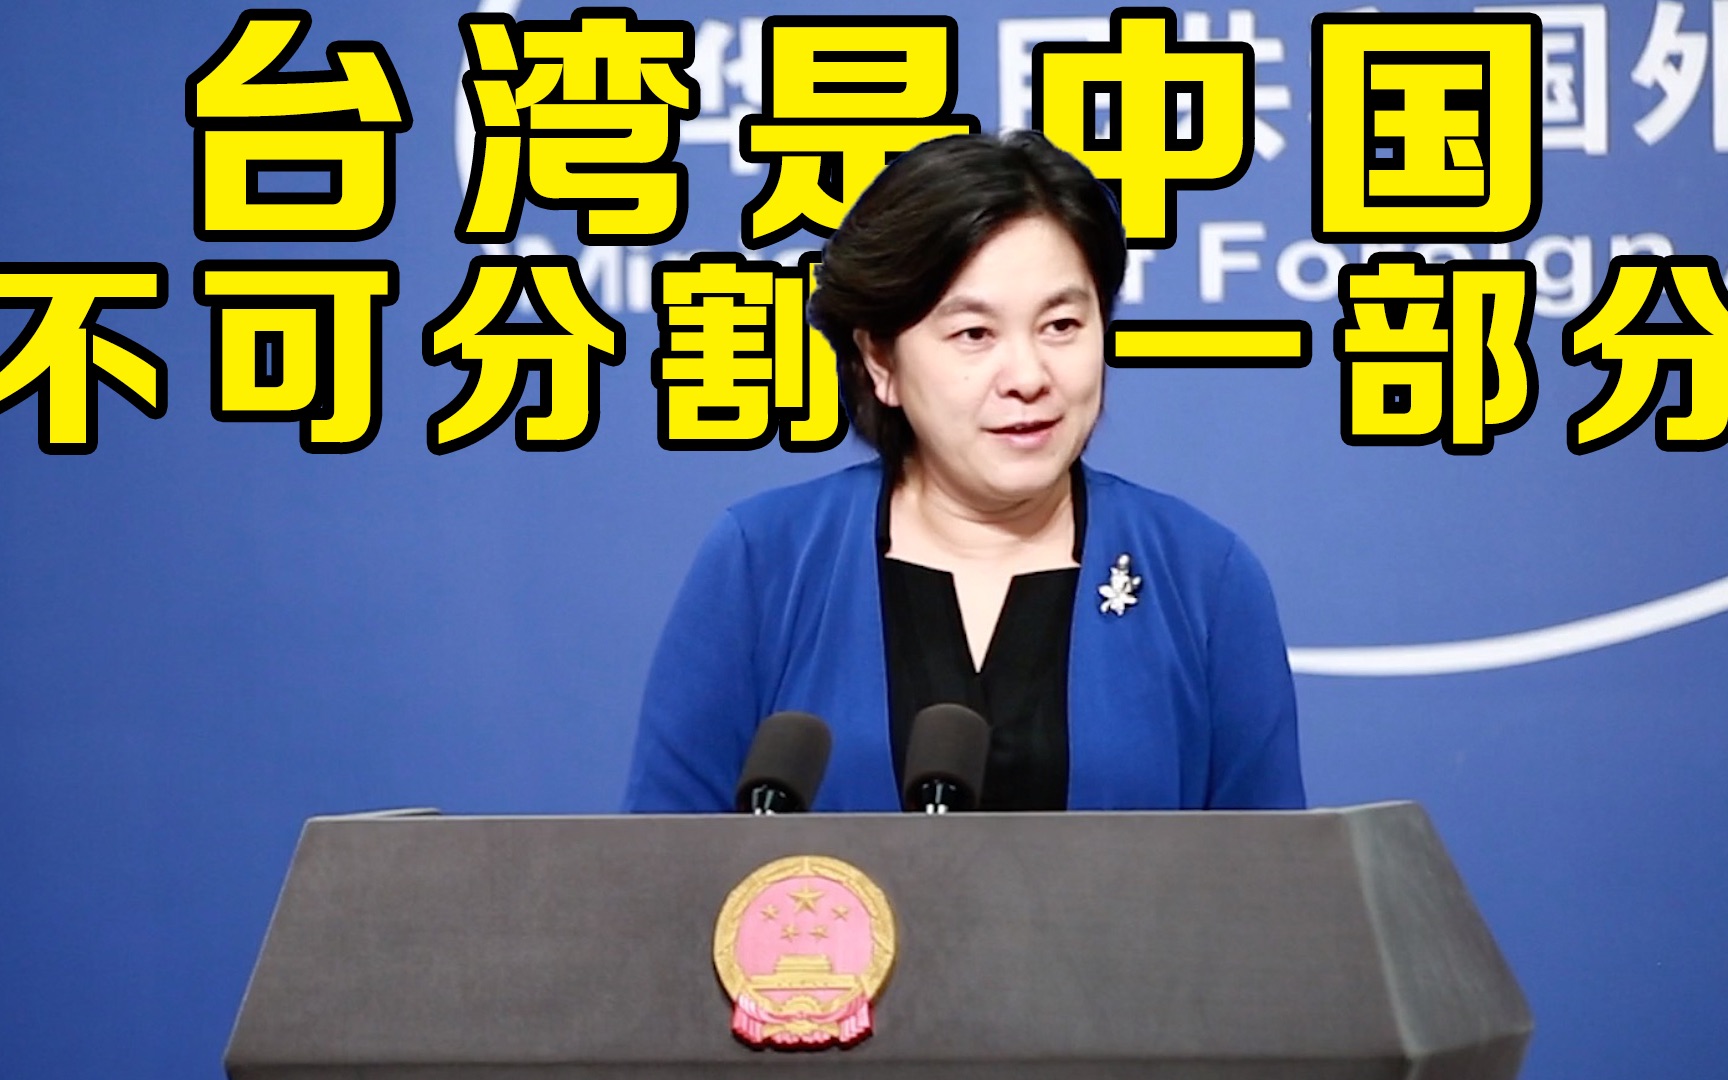 民进党当局发布新版“护照”把“台湾”字体搞大 外交部回应